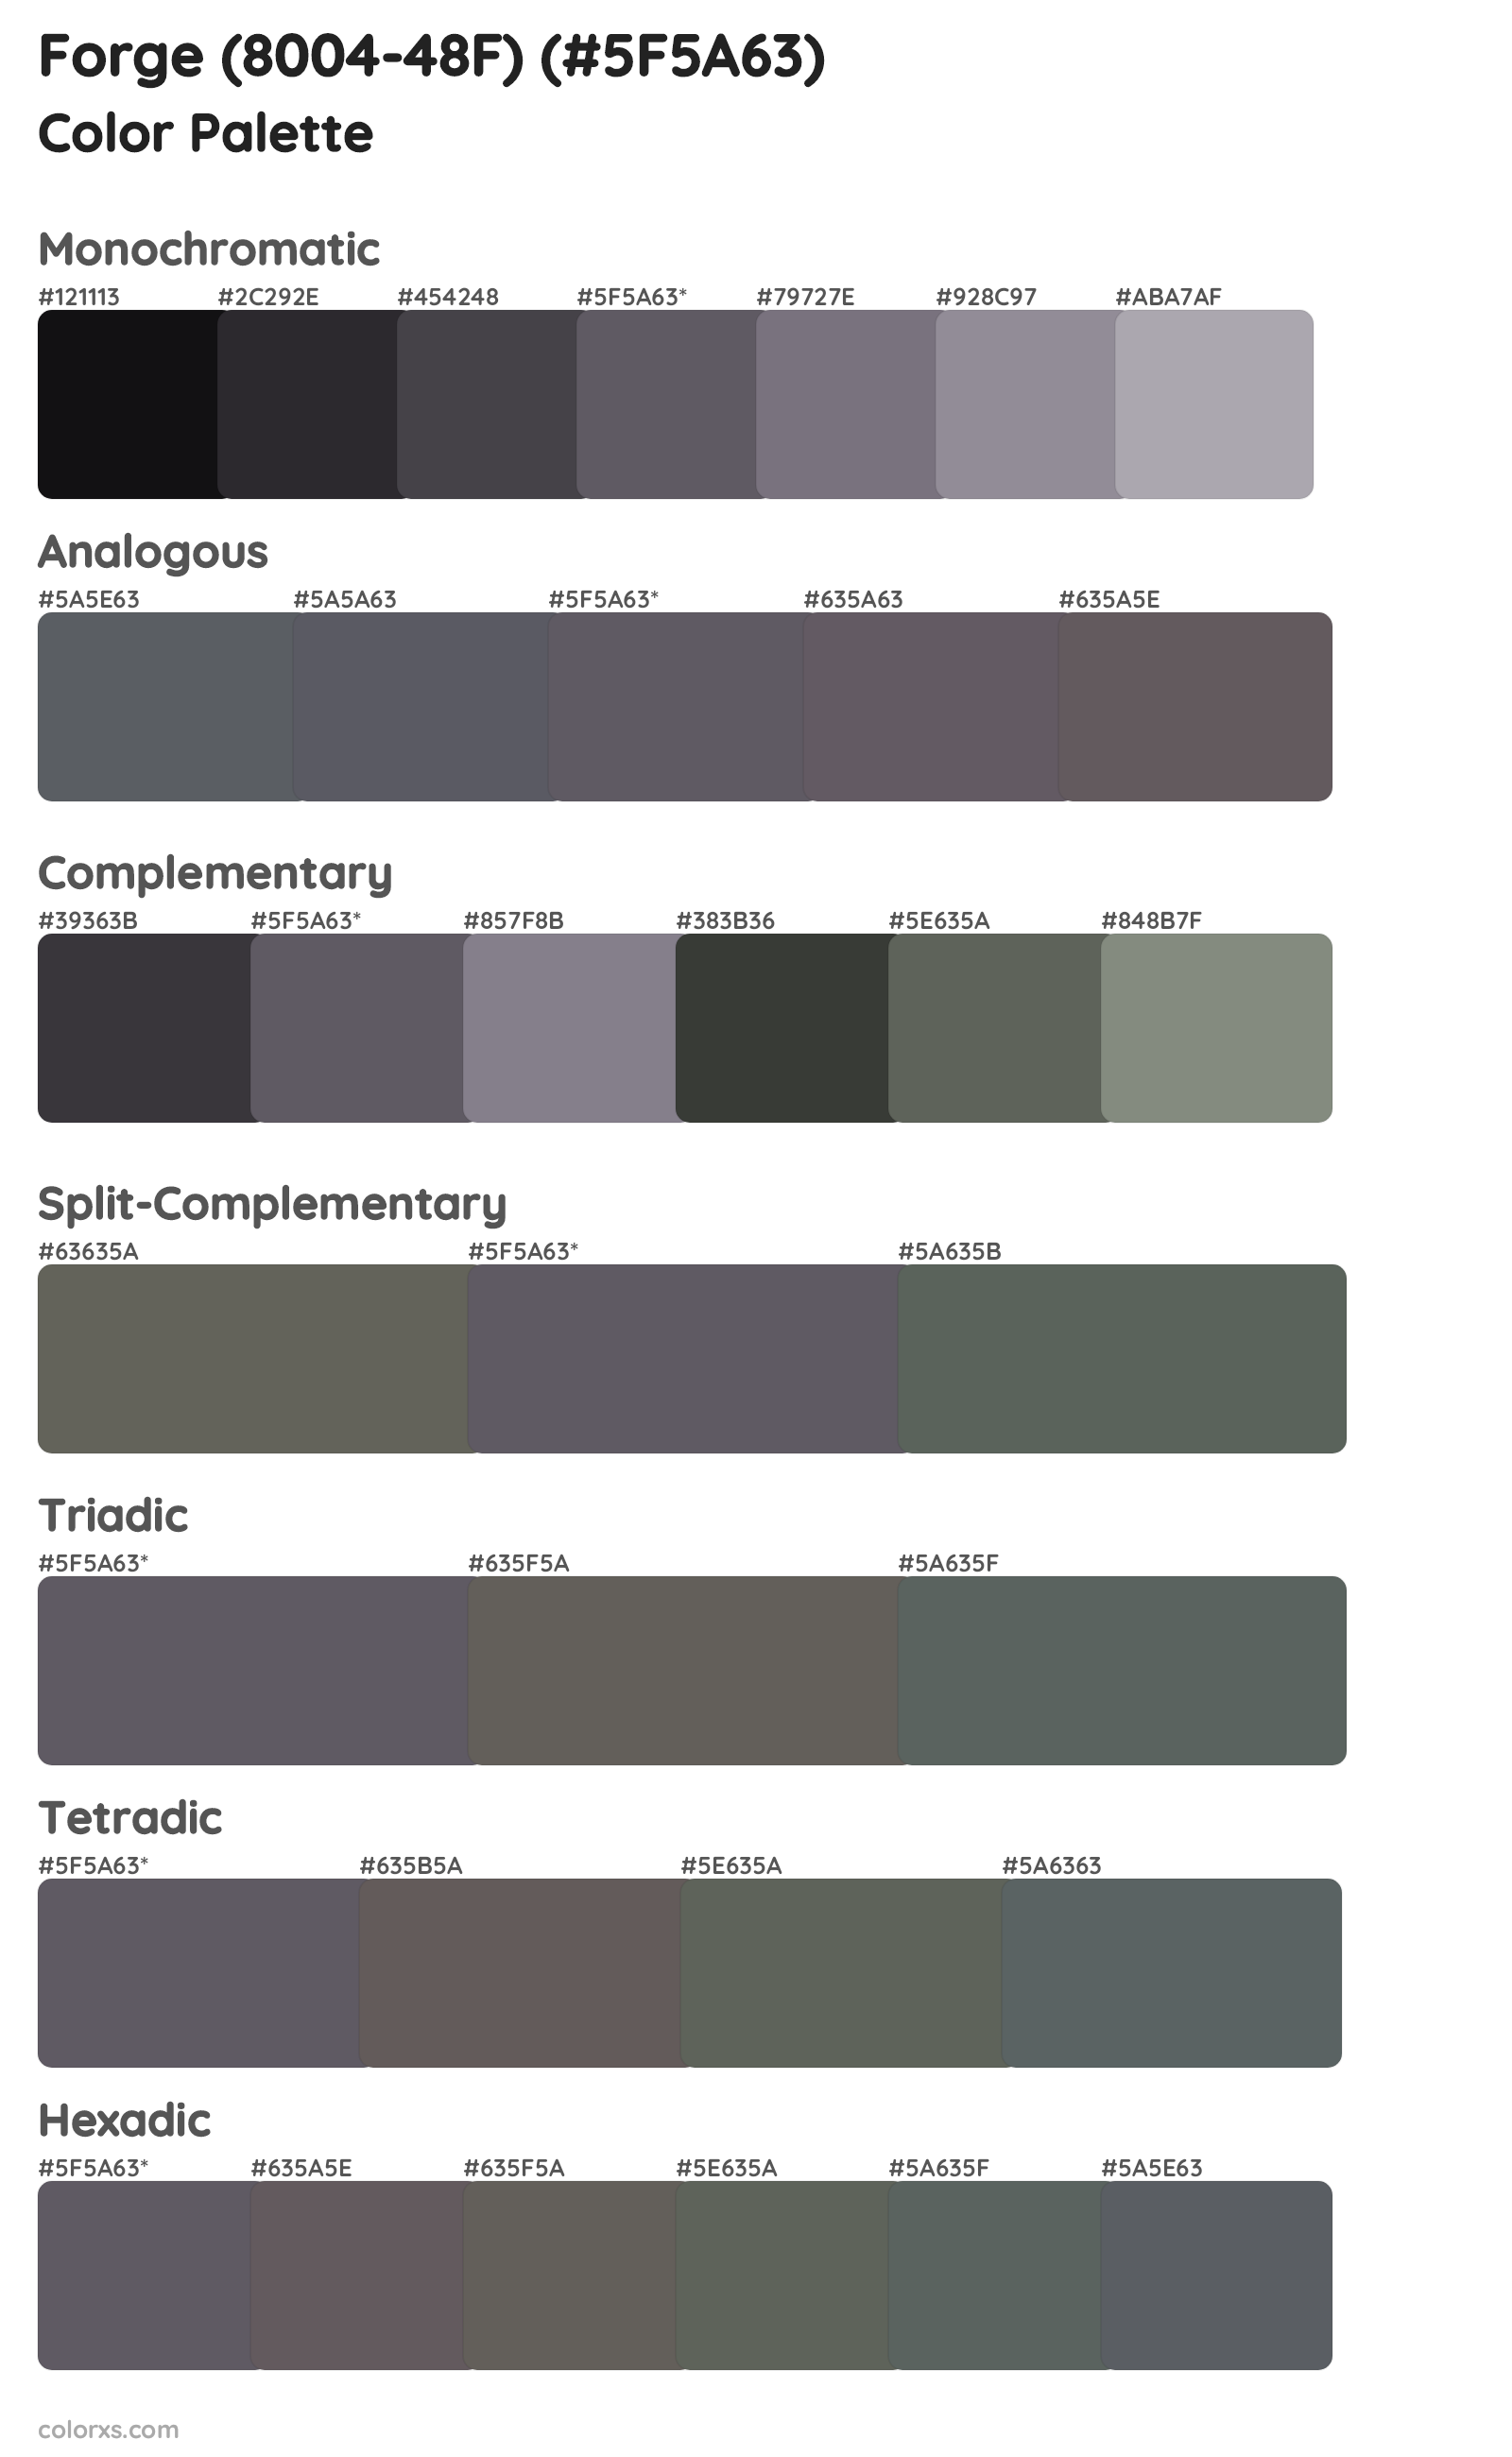 Forge (8004-48F) Color Scheme Palettes